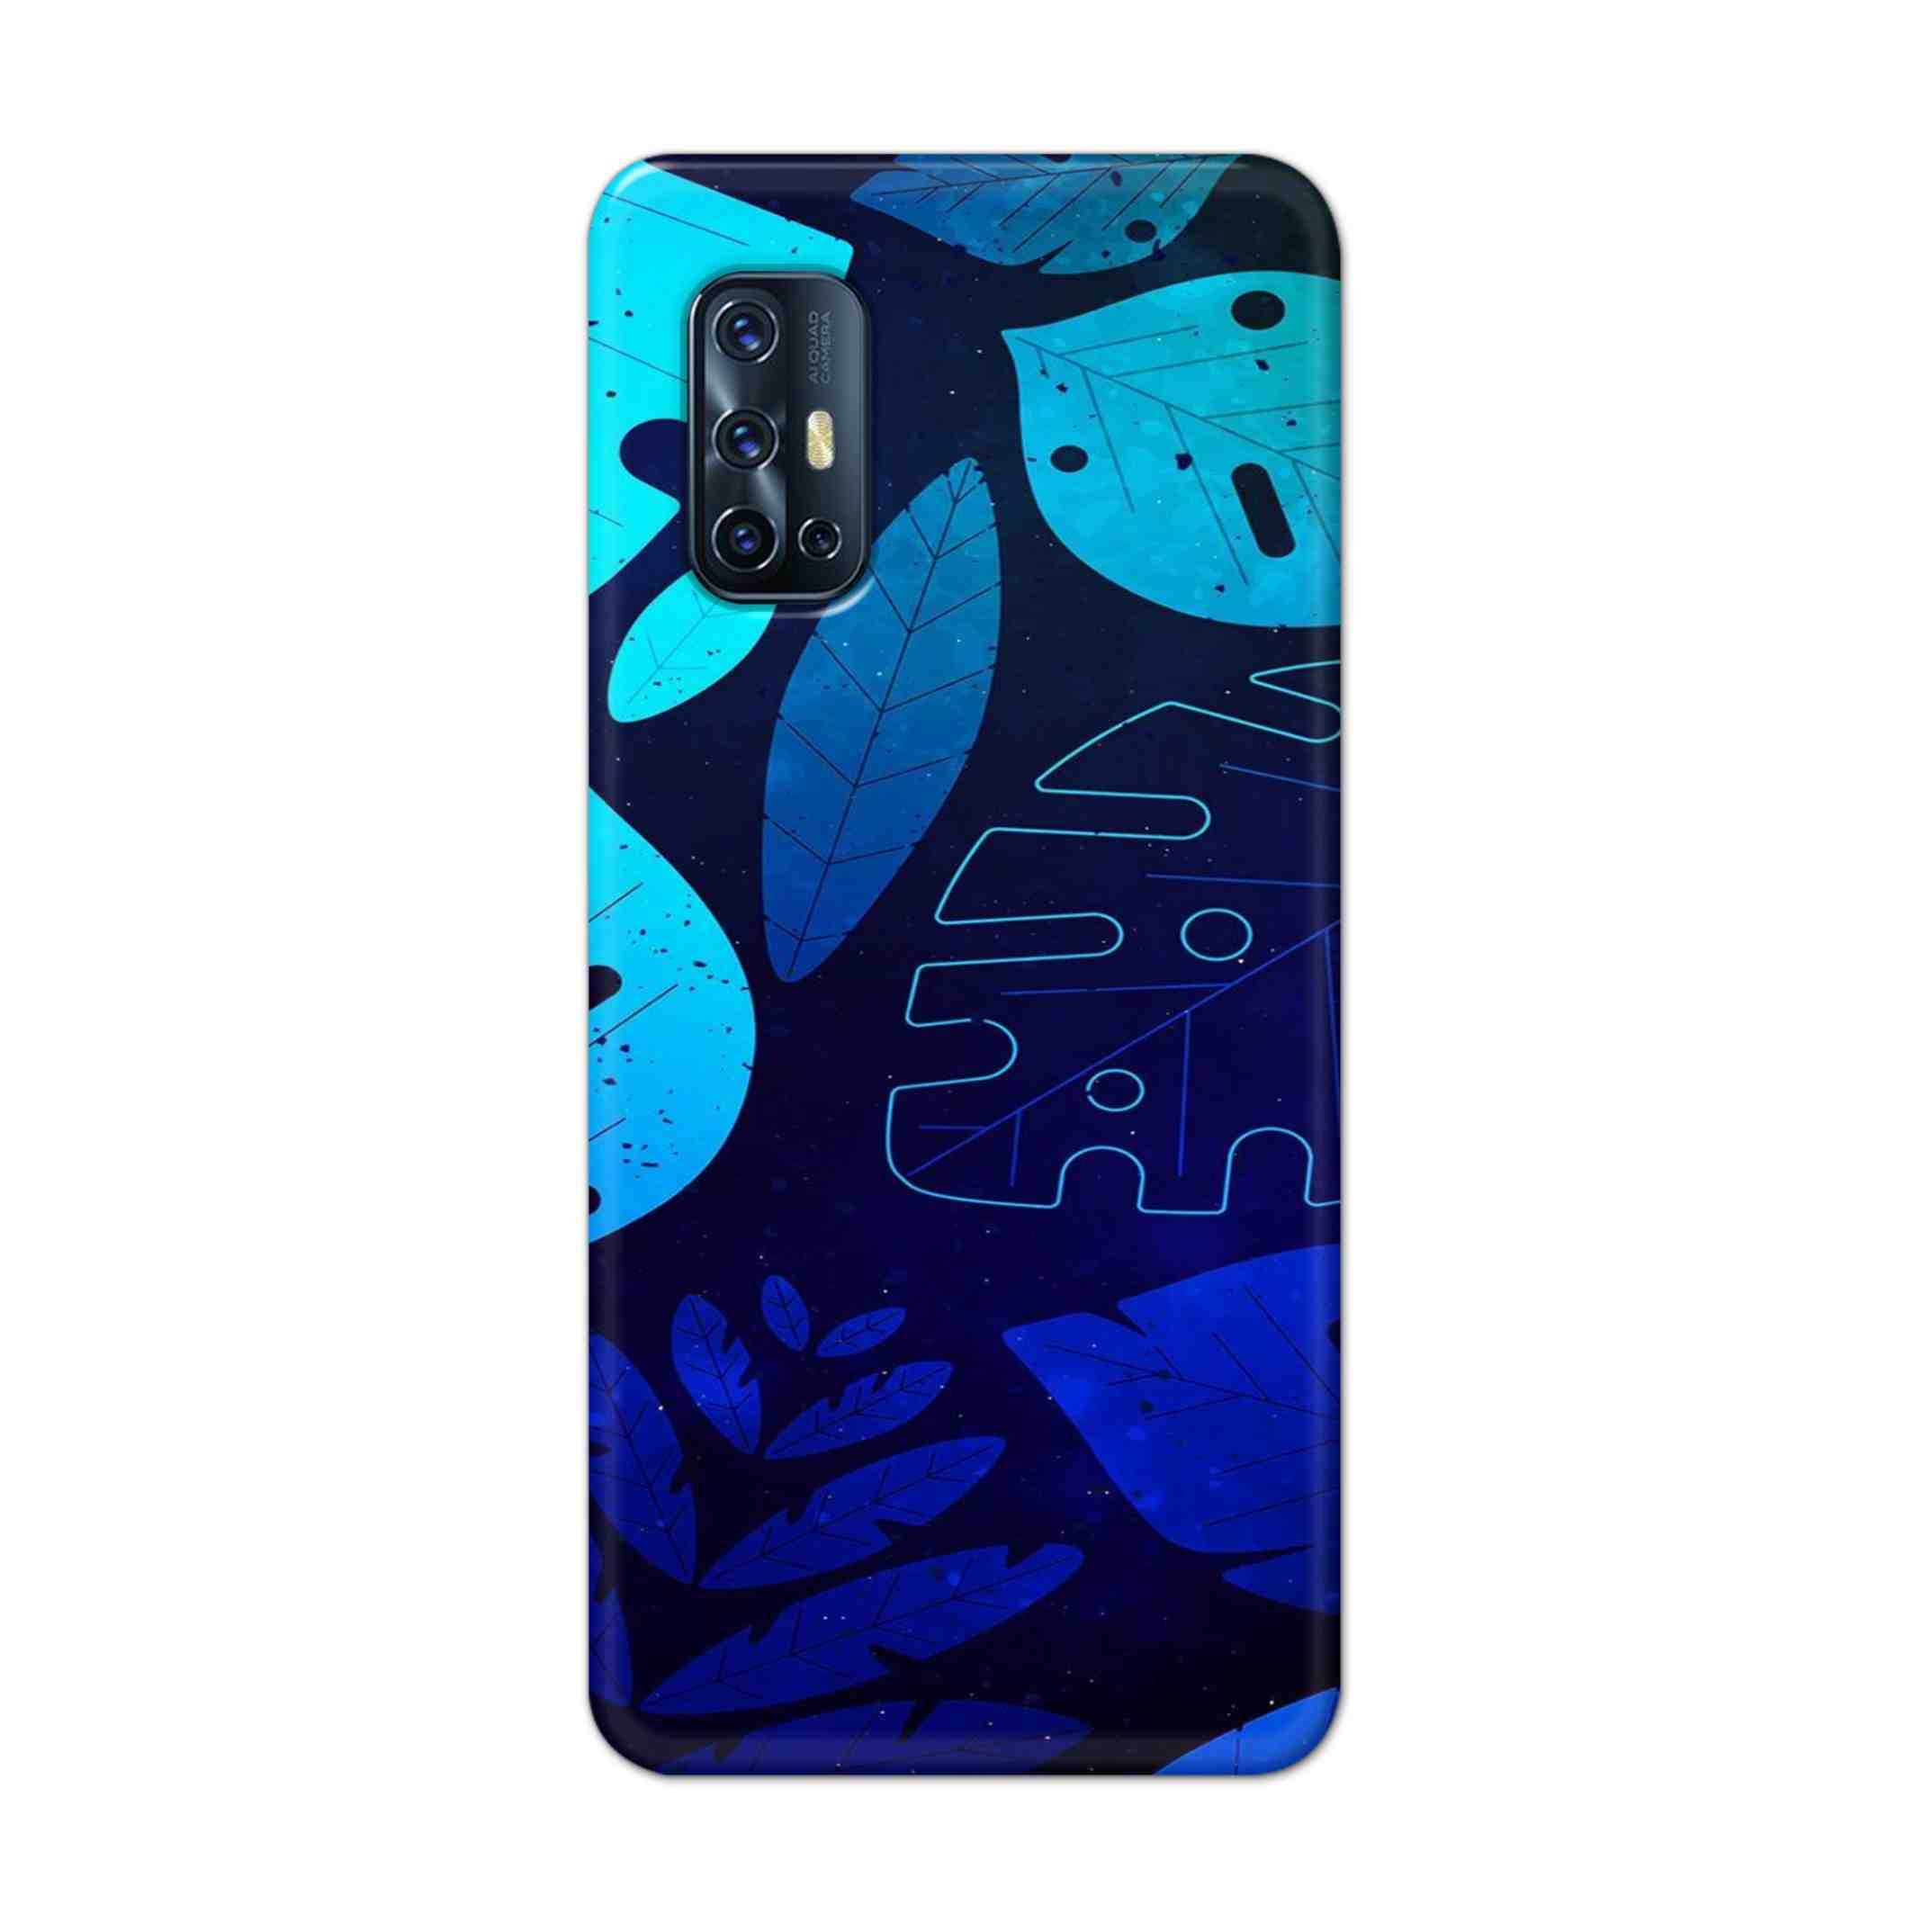 Buy Neon Leaf Hard Back Mobile Phone Case Cover For Vivo V17 Online